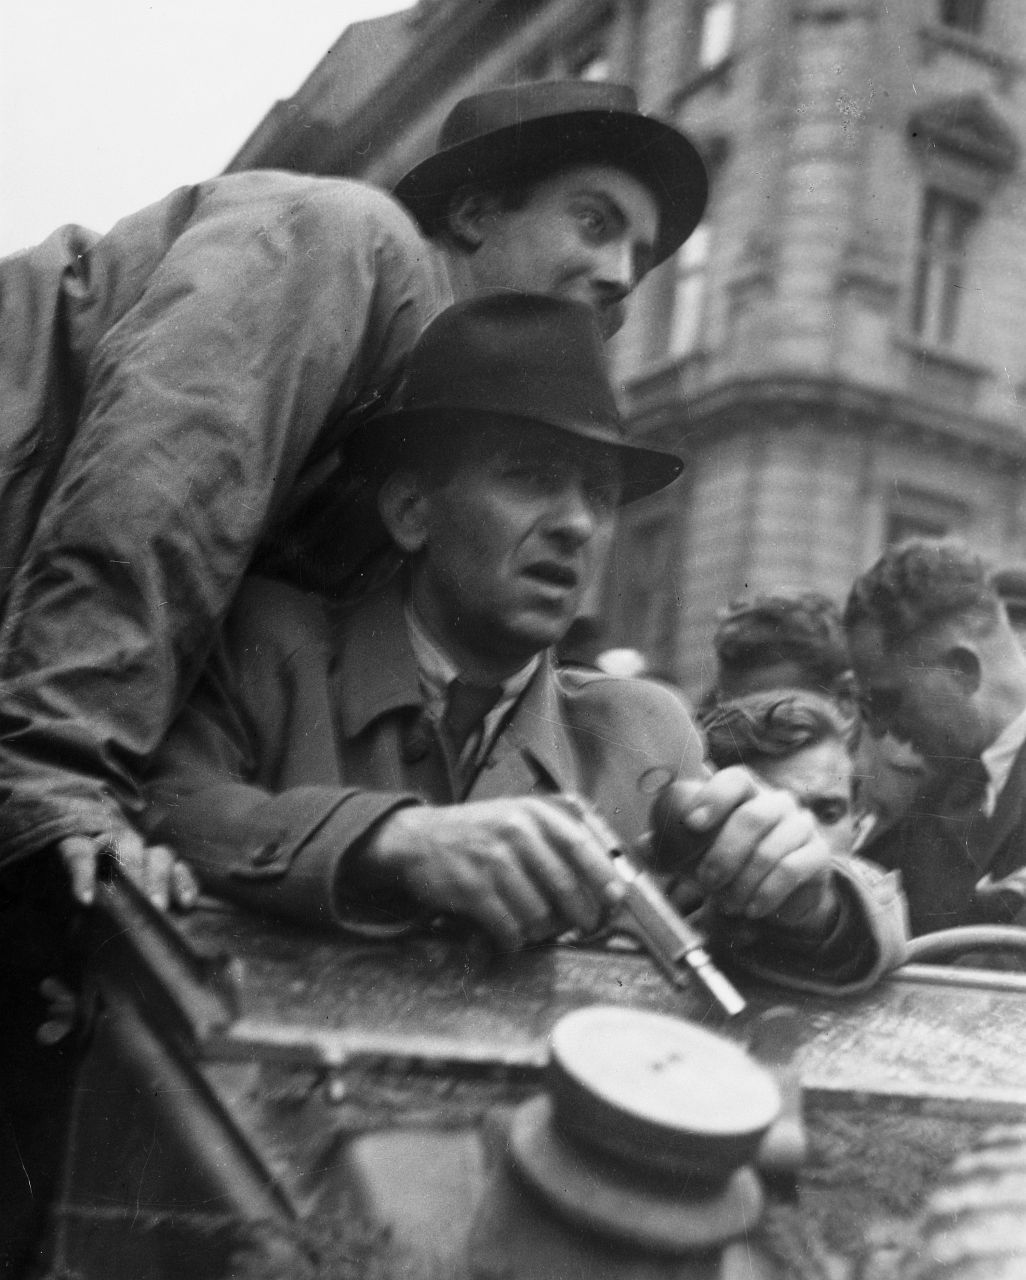 Sláva Štochl: Obránci barikád, Praha, 5 – 9. května 1945